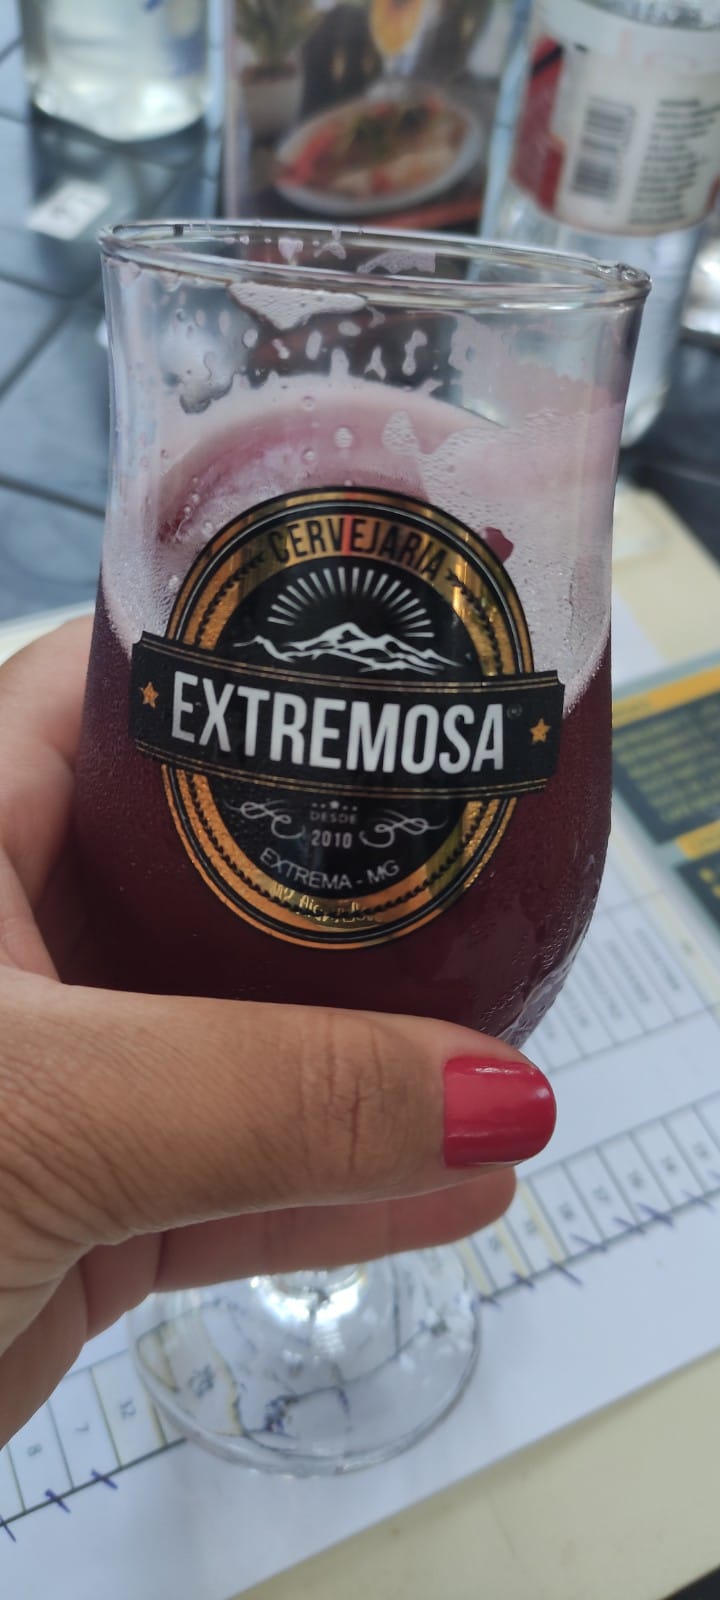 Extrema-MG